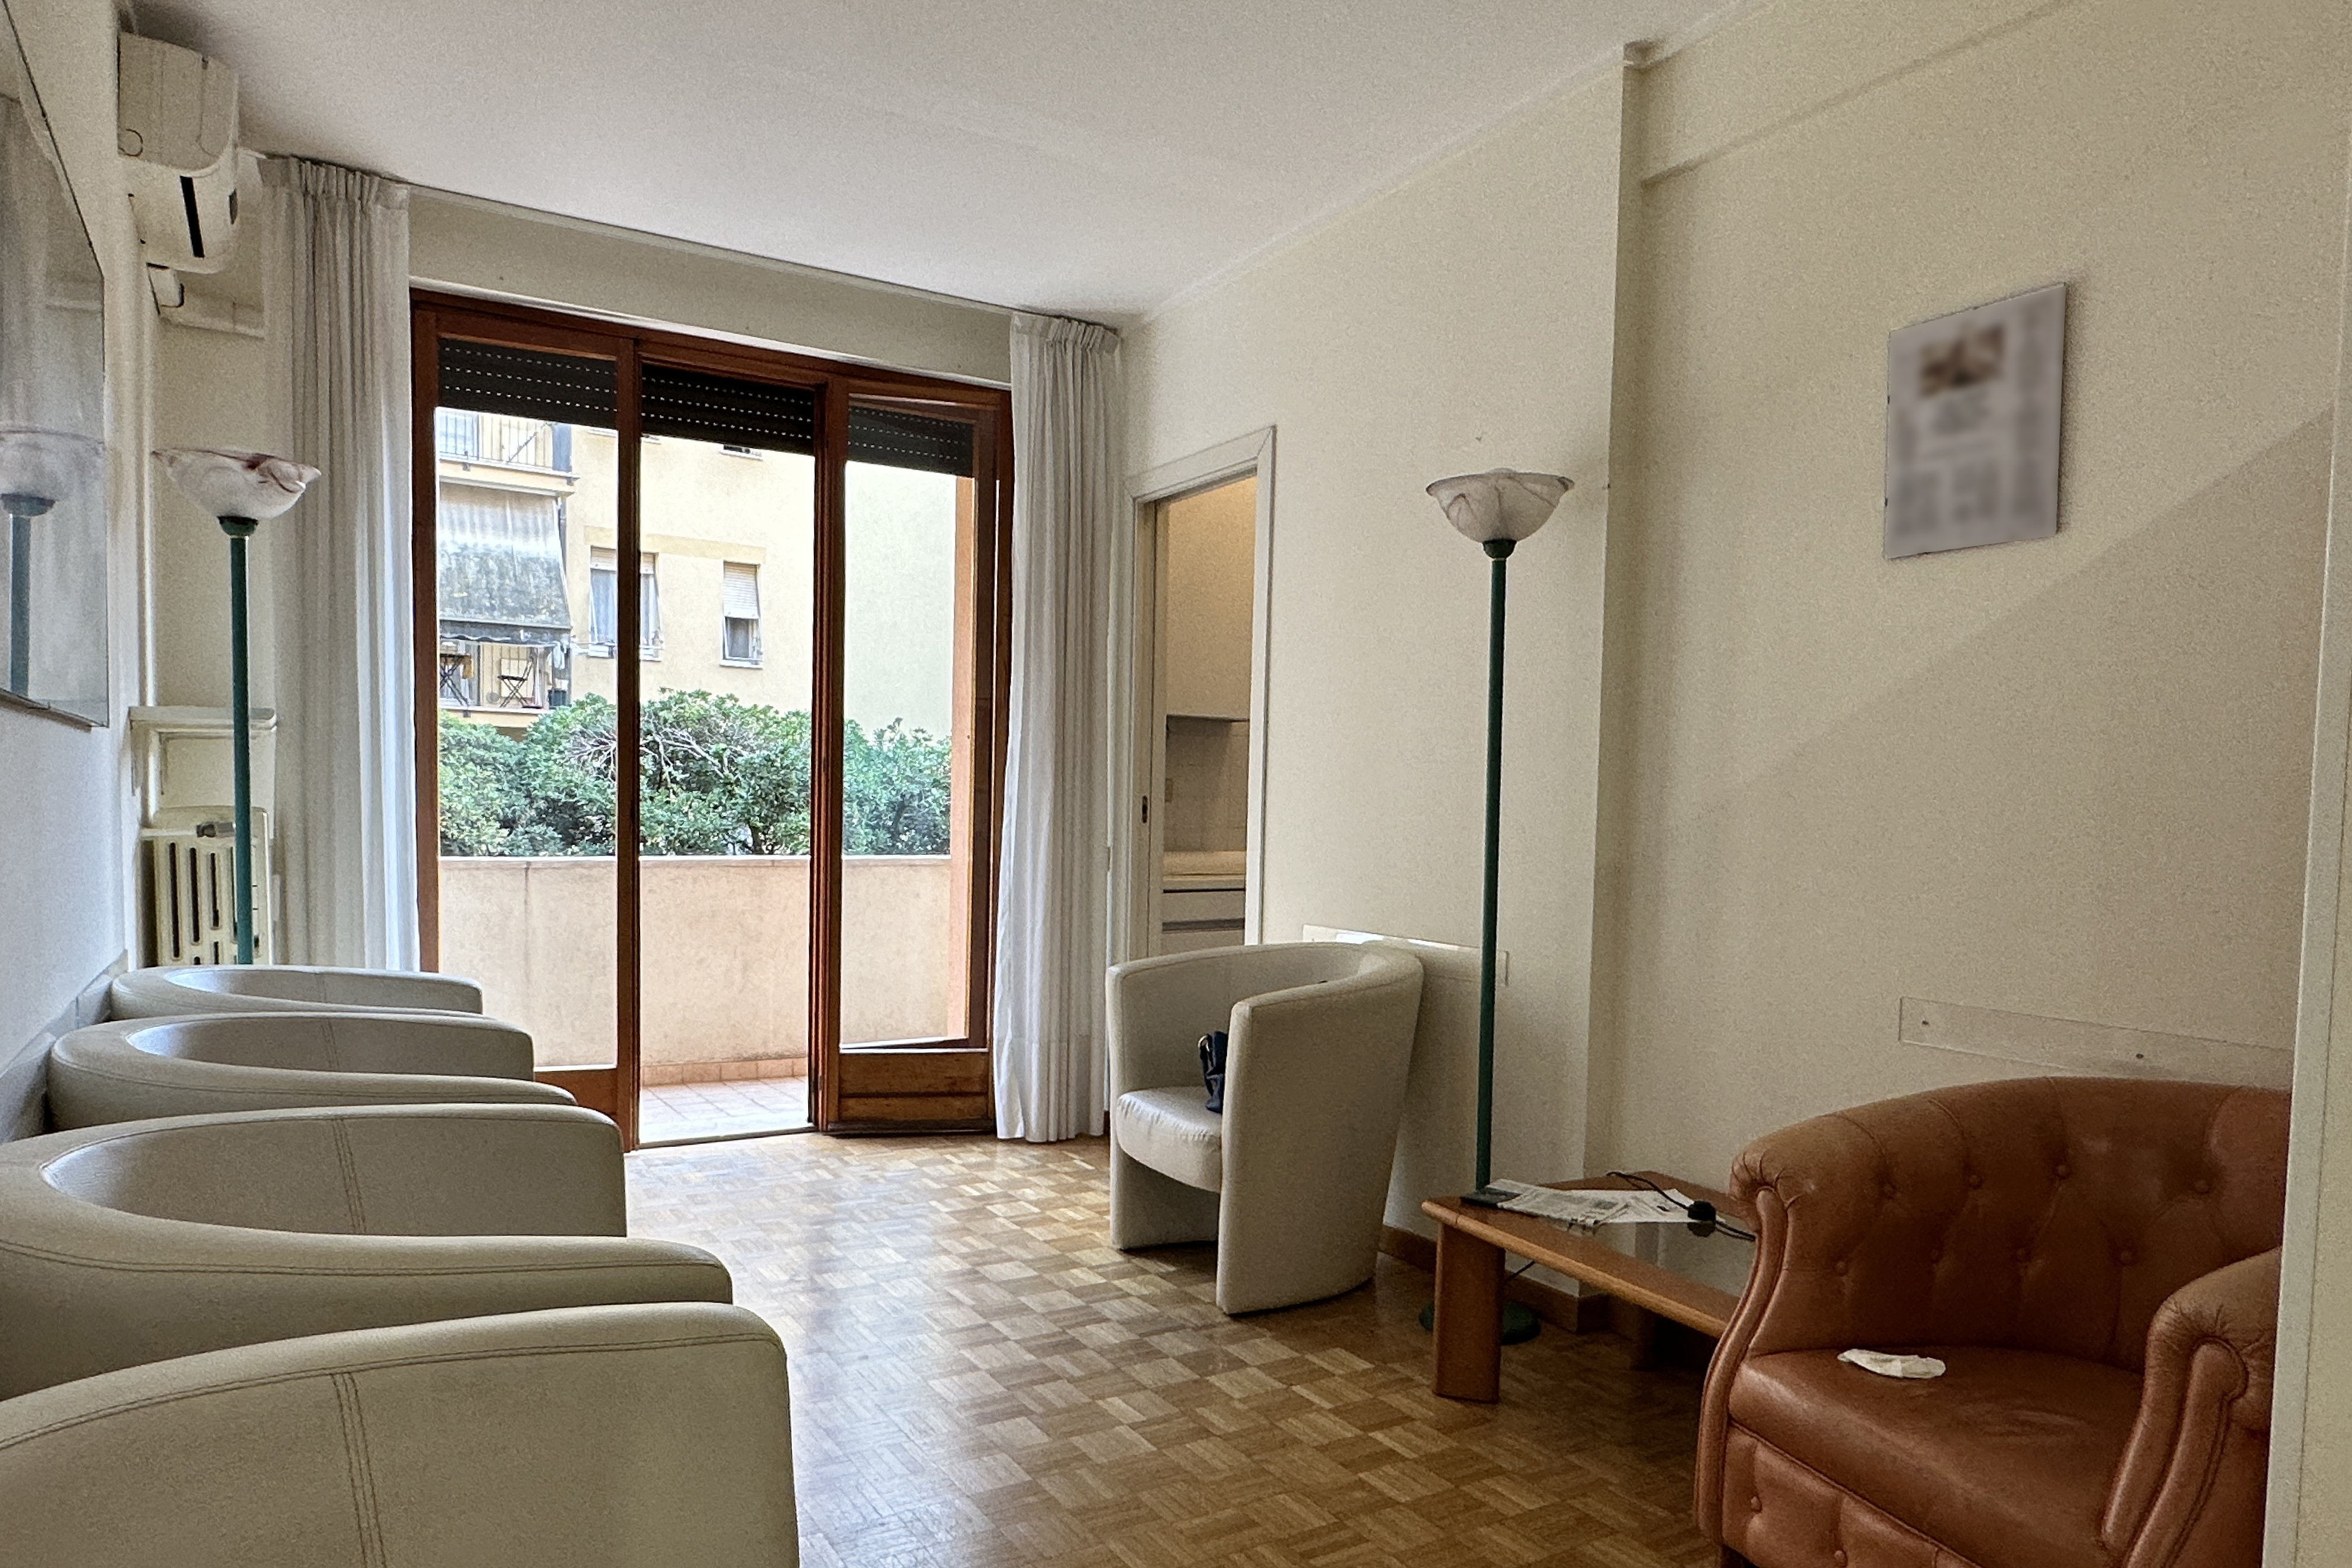 Vendita ottimo appartamento Pesaro - zona centro-mare (AP799)